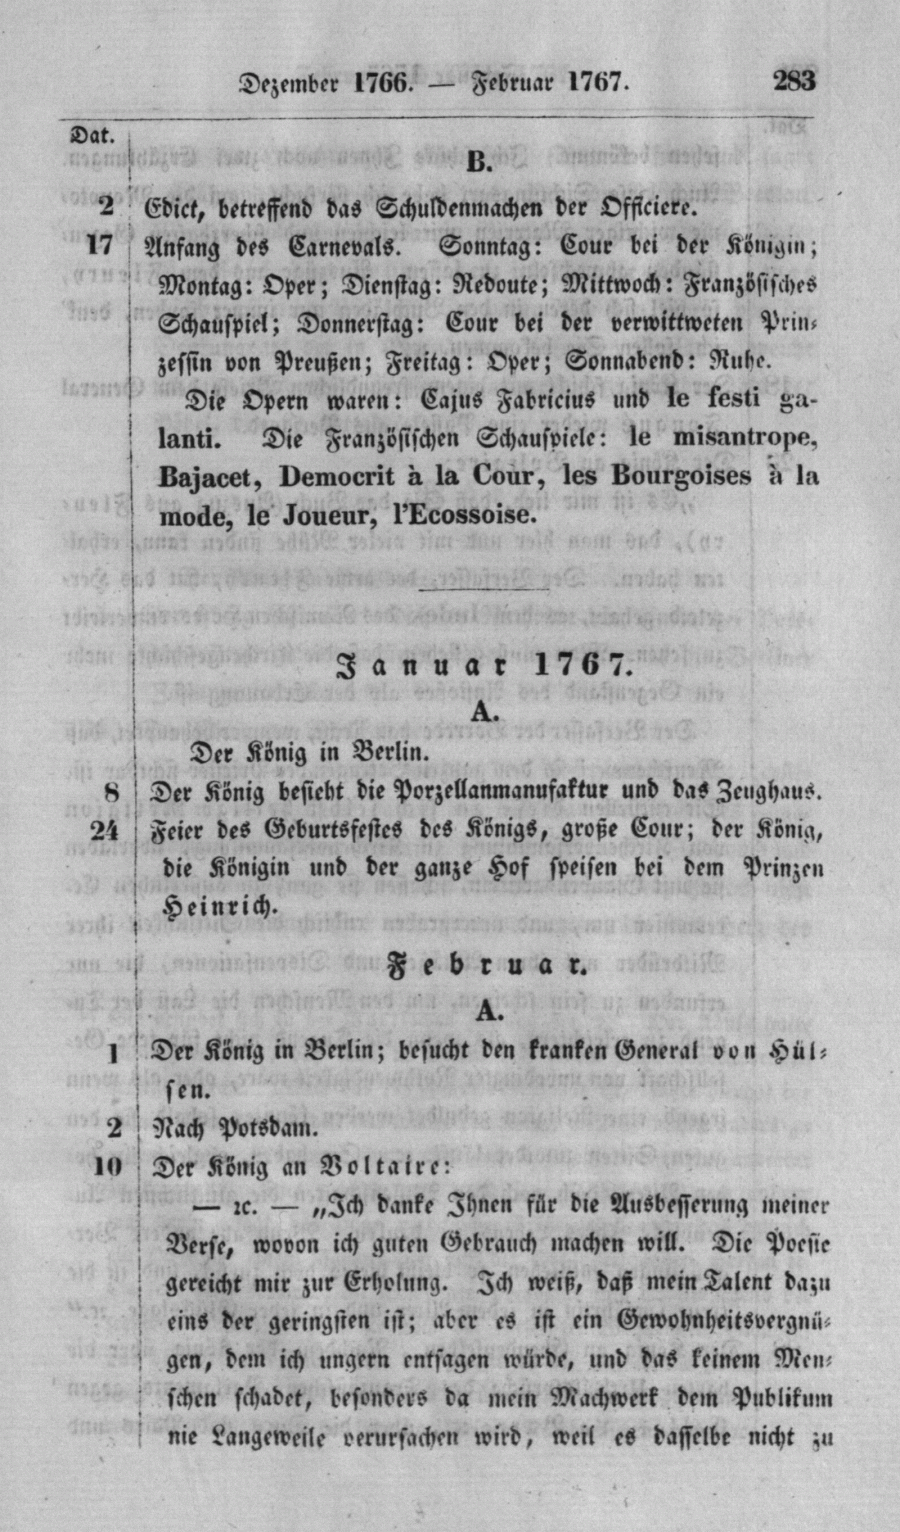 S. 283, Obj. 2